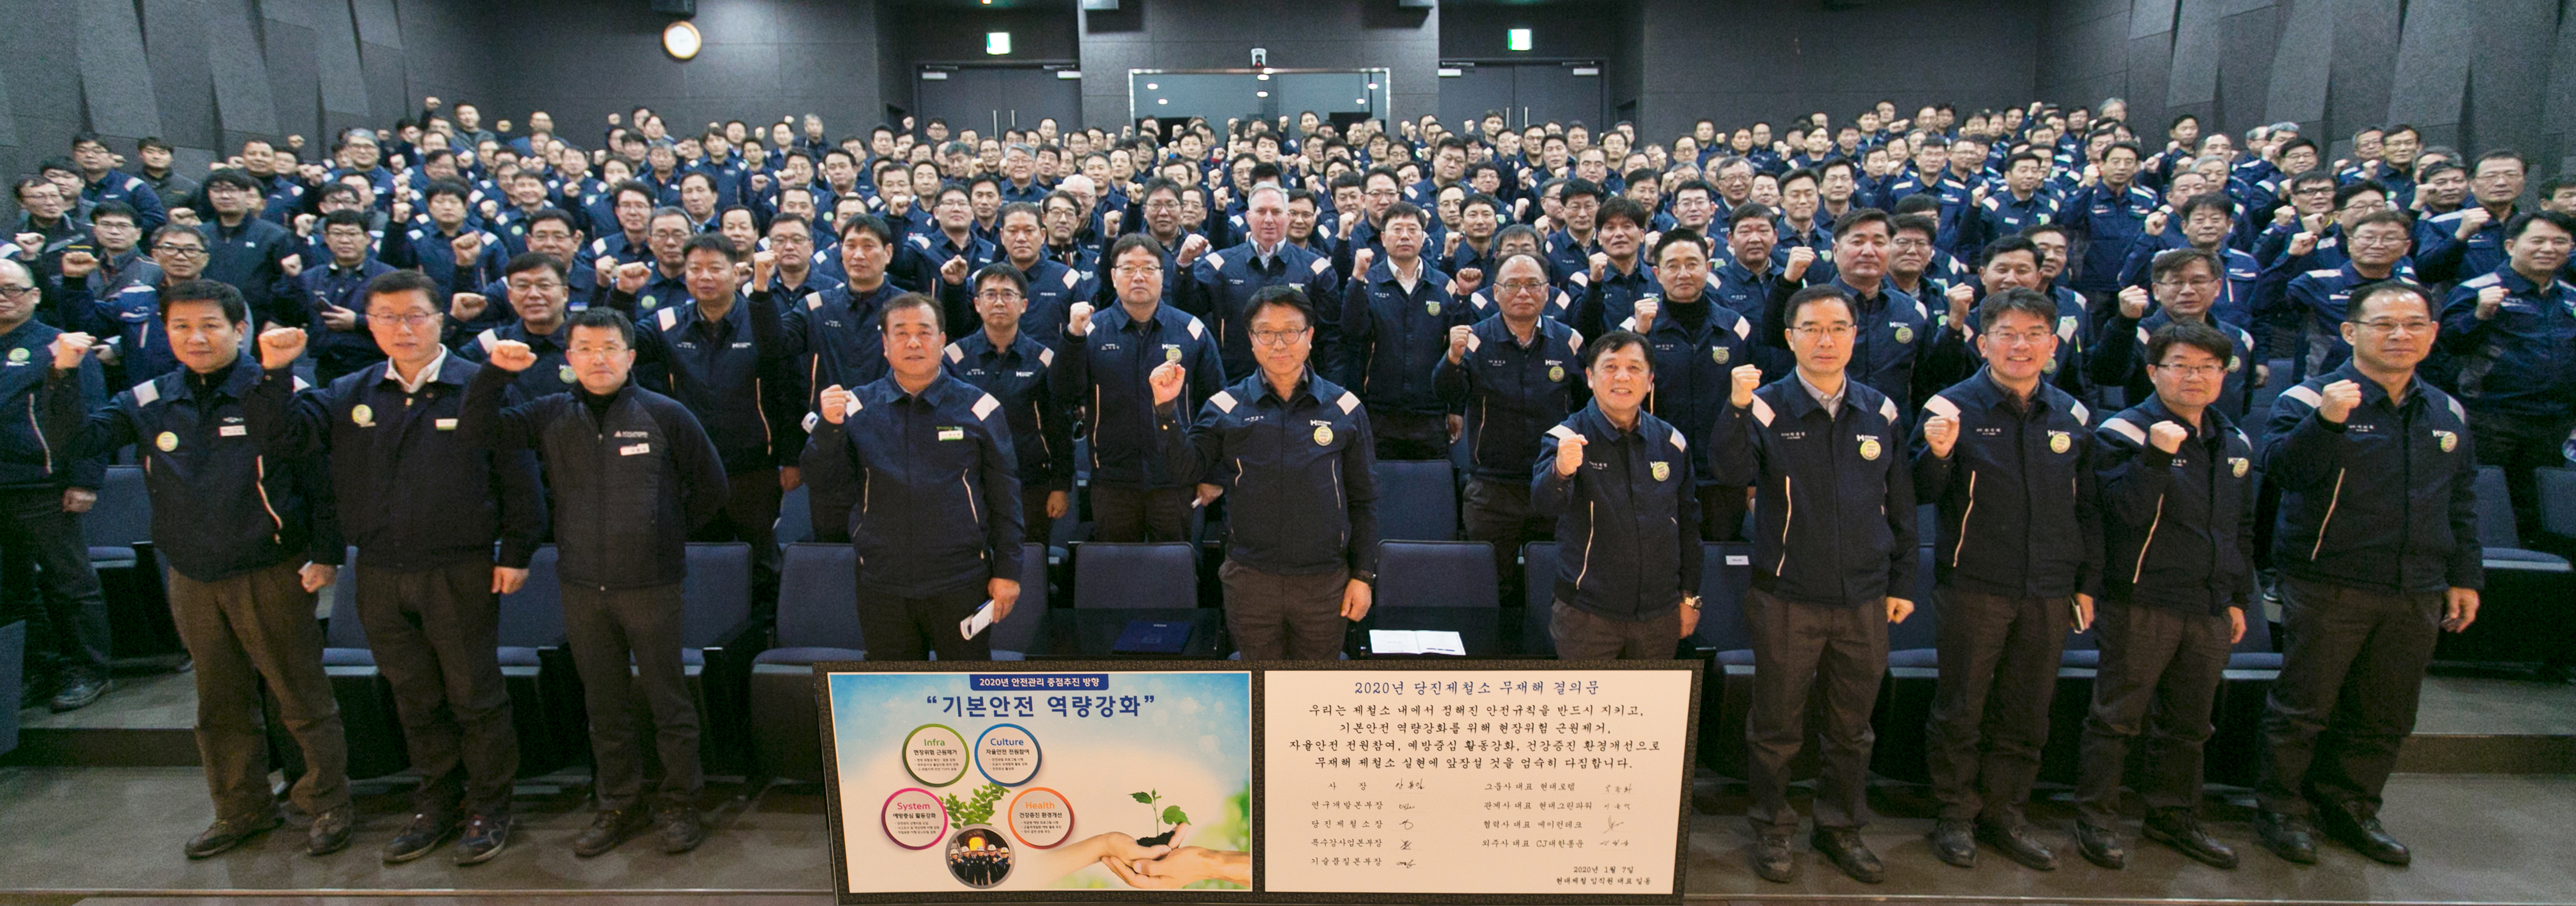 당진제철소는 1월 9일 100년안전문화관 대강당에서 당진제철소 주재 임원,팀장,기장 260여명을 대상으로 특별안전교육을 실시했다.